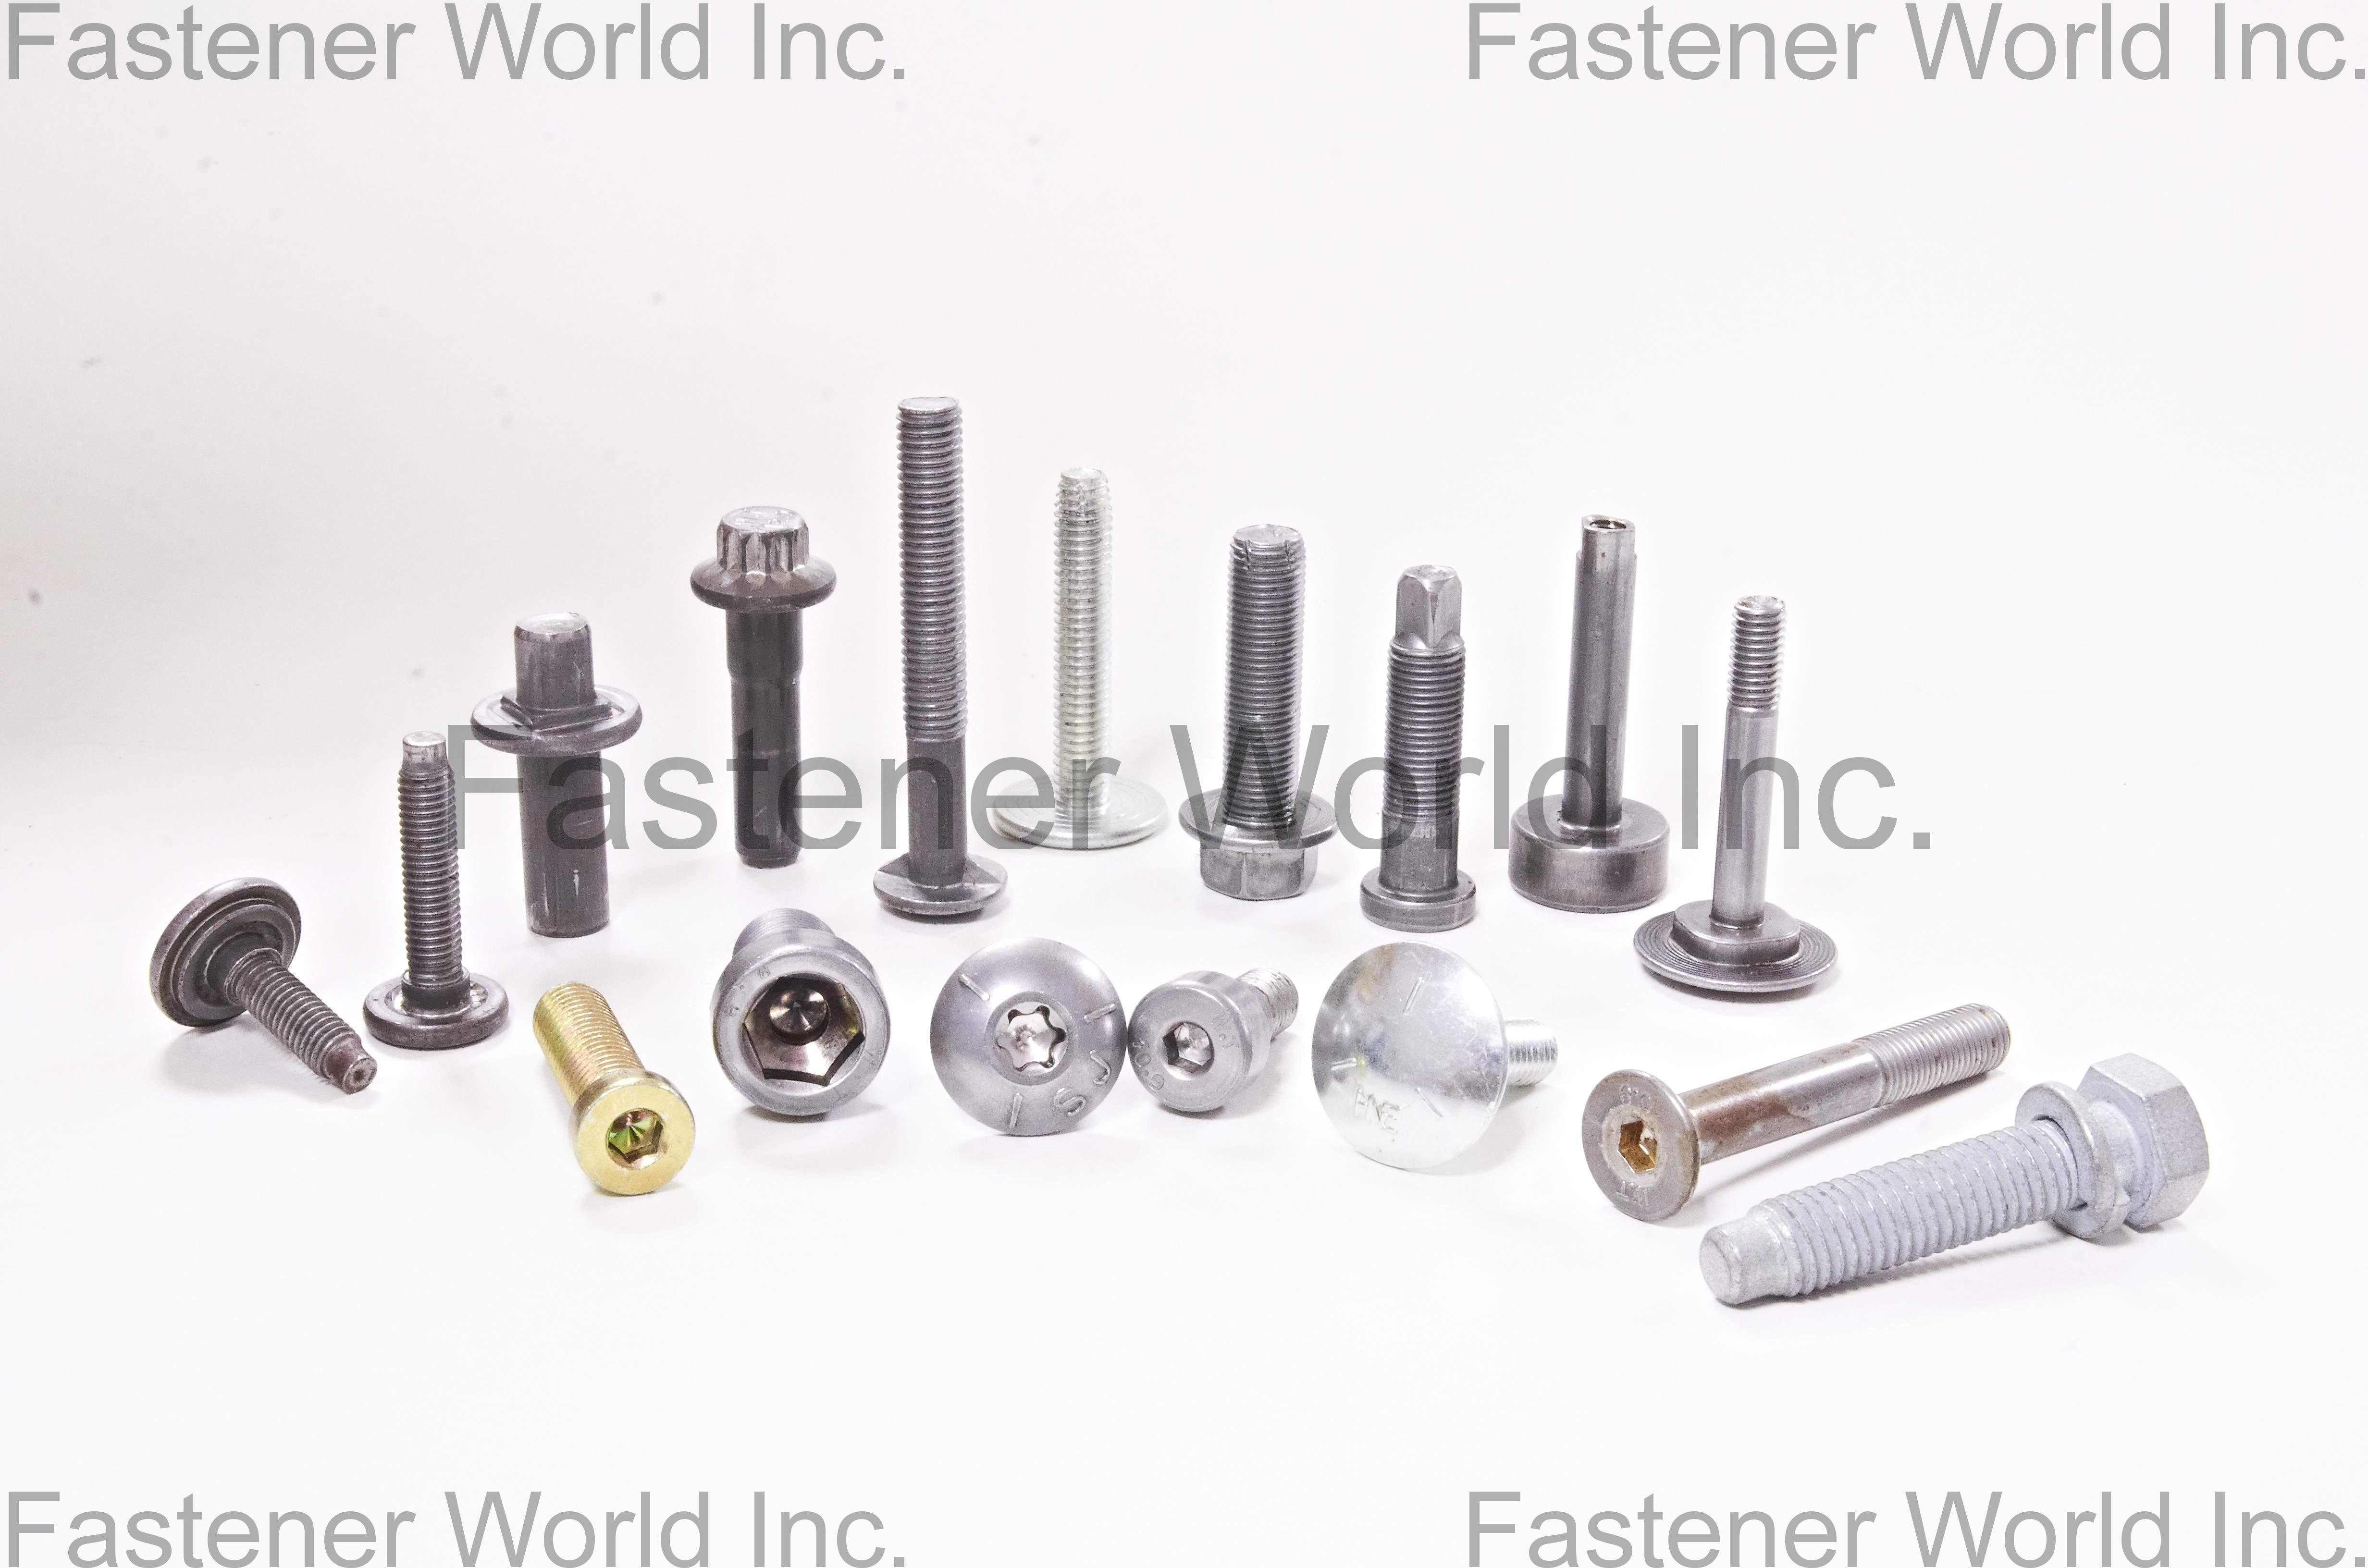 HWEI NEN CO., LTD. , Customized Special Screws / Bolts, Automotive Screws / Bolts, Double-head Screws / Bolts, Alloy Steel Screws, Flange Screws , Customized Special Screws / Bolts